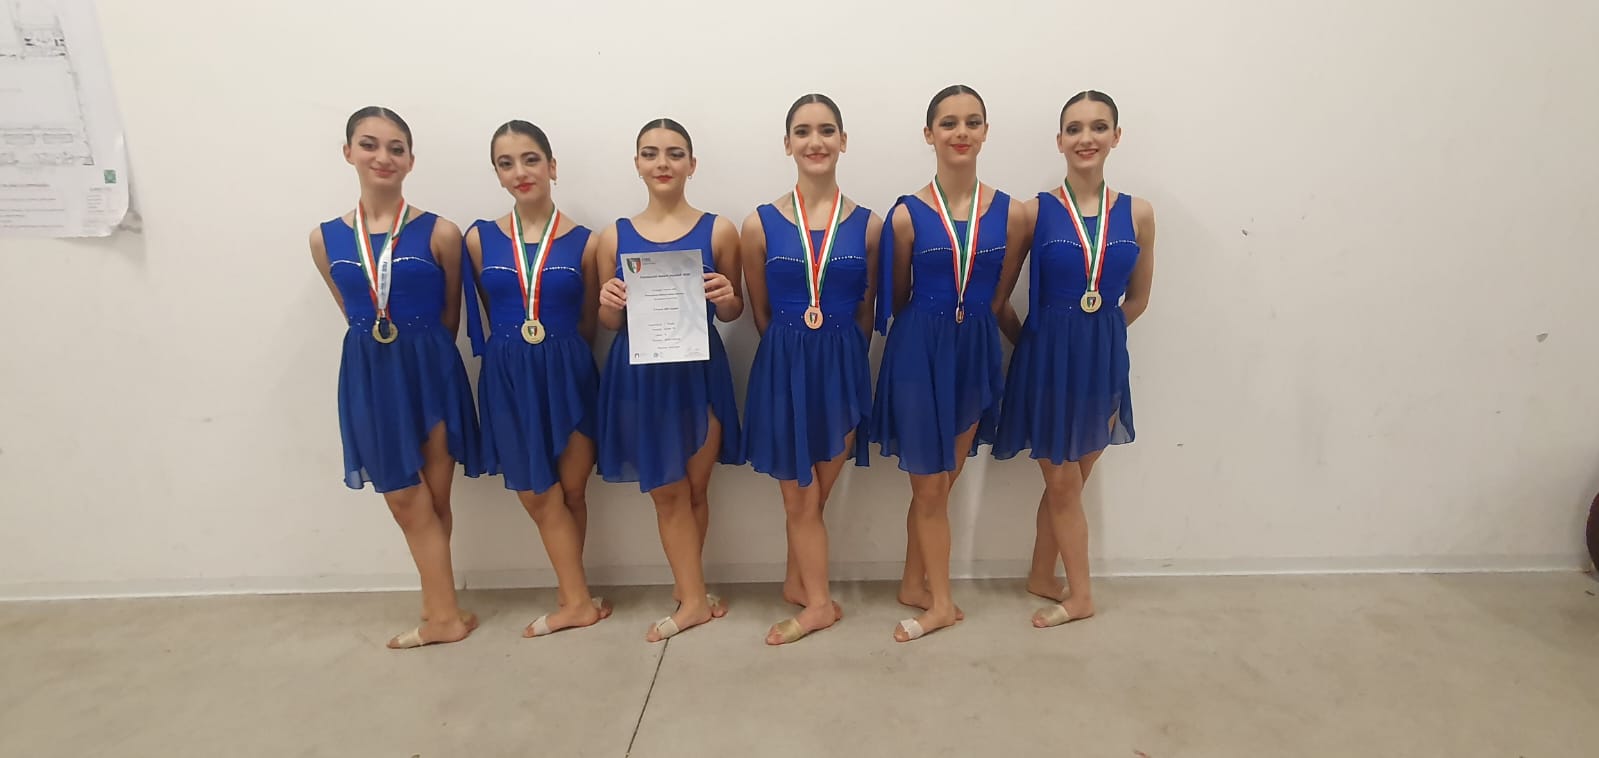 Reggio, le Atlete della Shed studio’s by asd Copacabana vincono il campionato assoluto di danze accademiche 